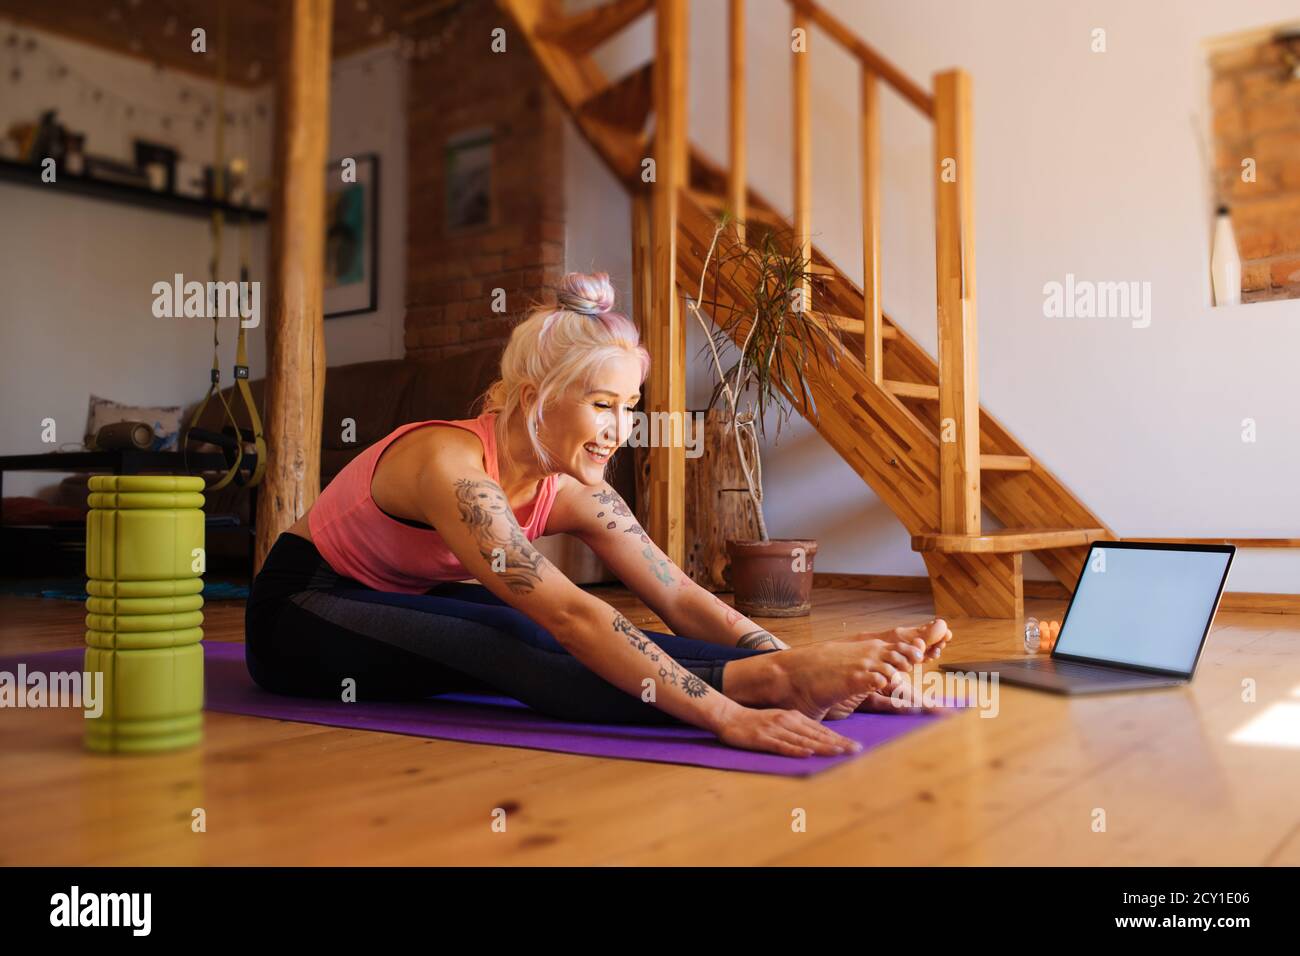 Giovane donna con un tatuaggio e rullo in schiuma da parte. Fitness esercizio virtuale online. Stretching da internet a casa. Una ragazza sportiva in abbigliamento sportivo Foto Stock